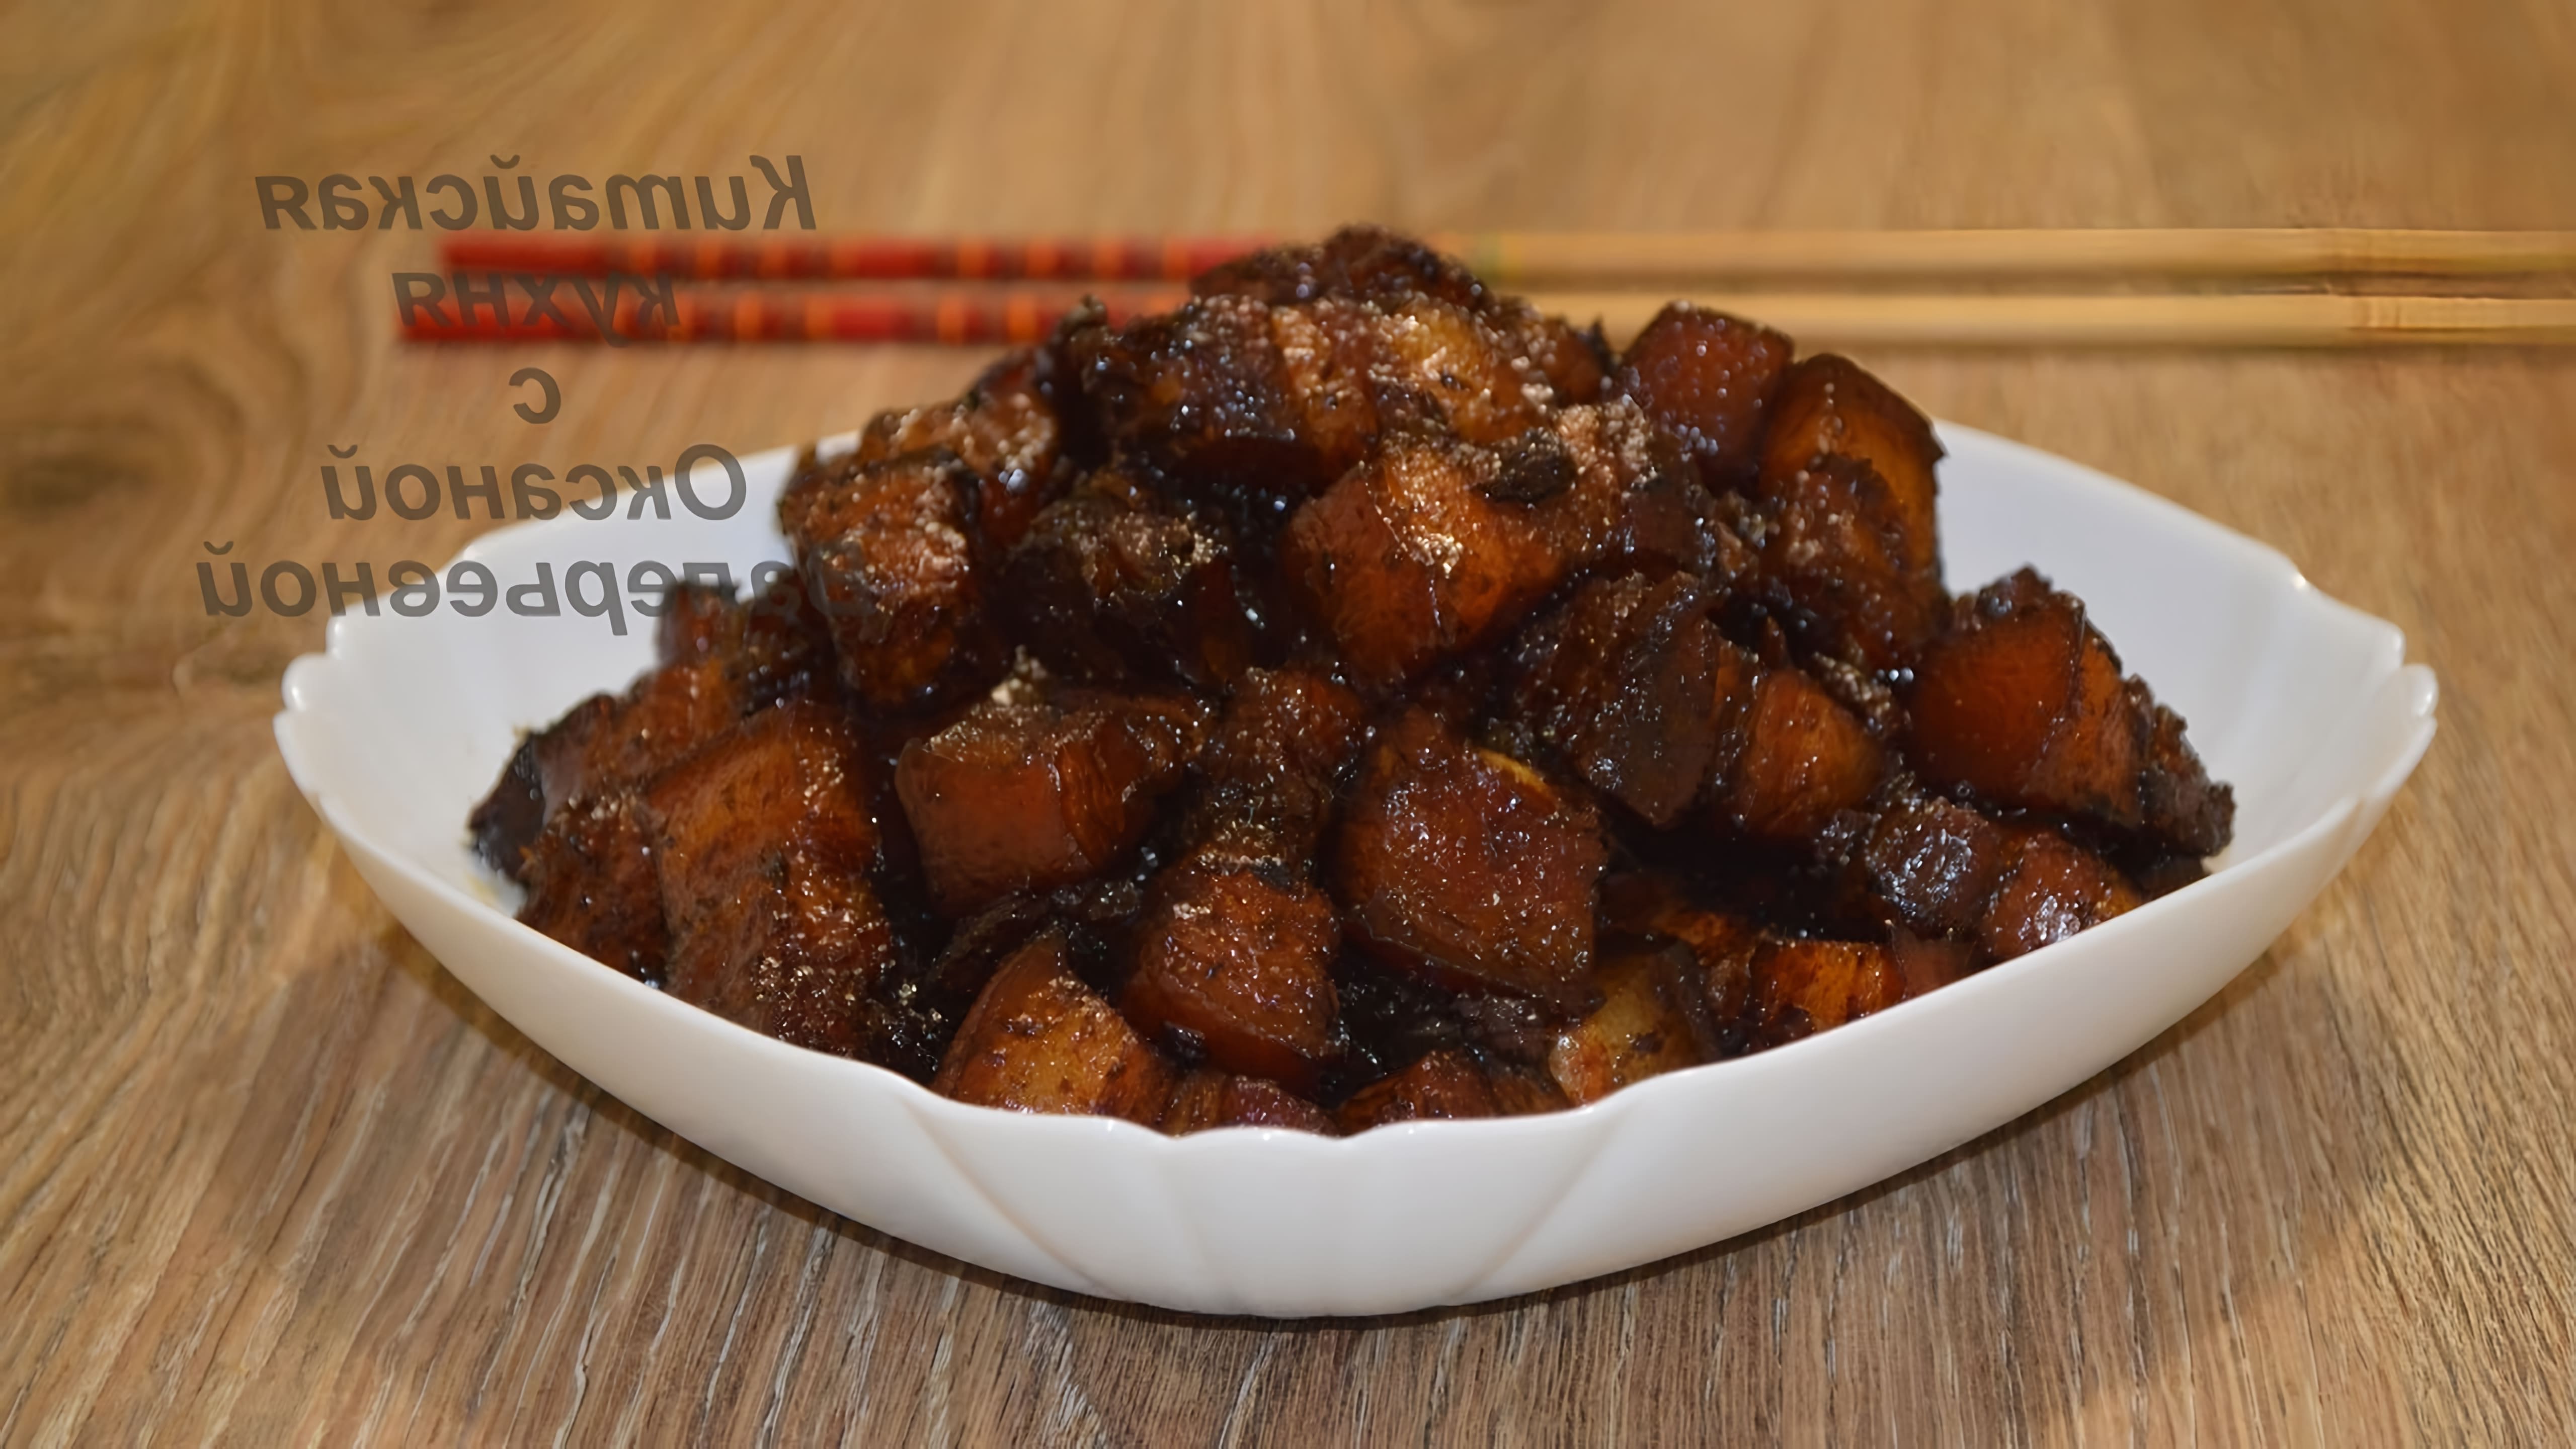 Хуншао жоу или Свинина тушеная по-красному - это простое и широко распространенное блюдо домашней китайской... 